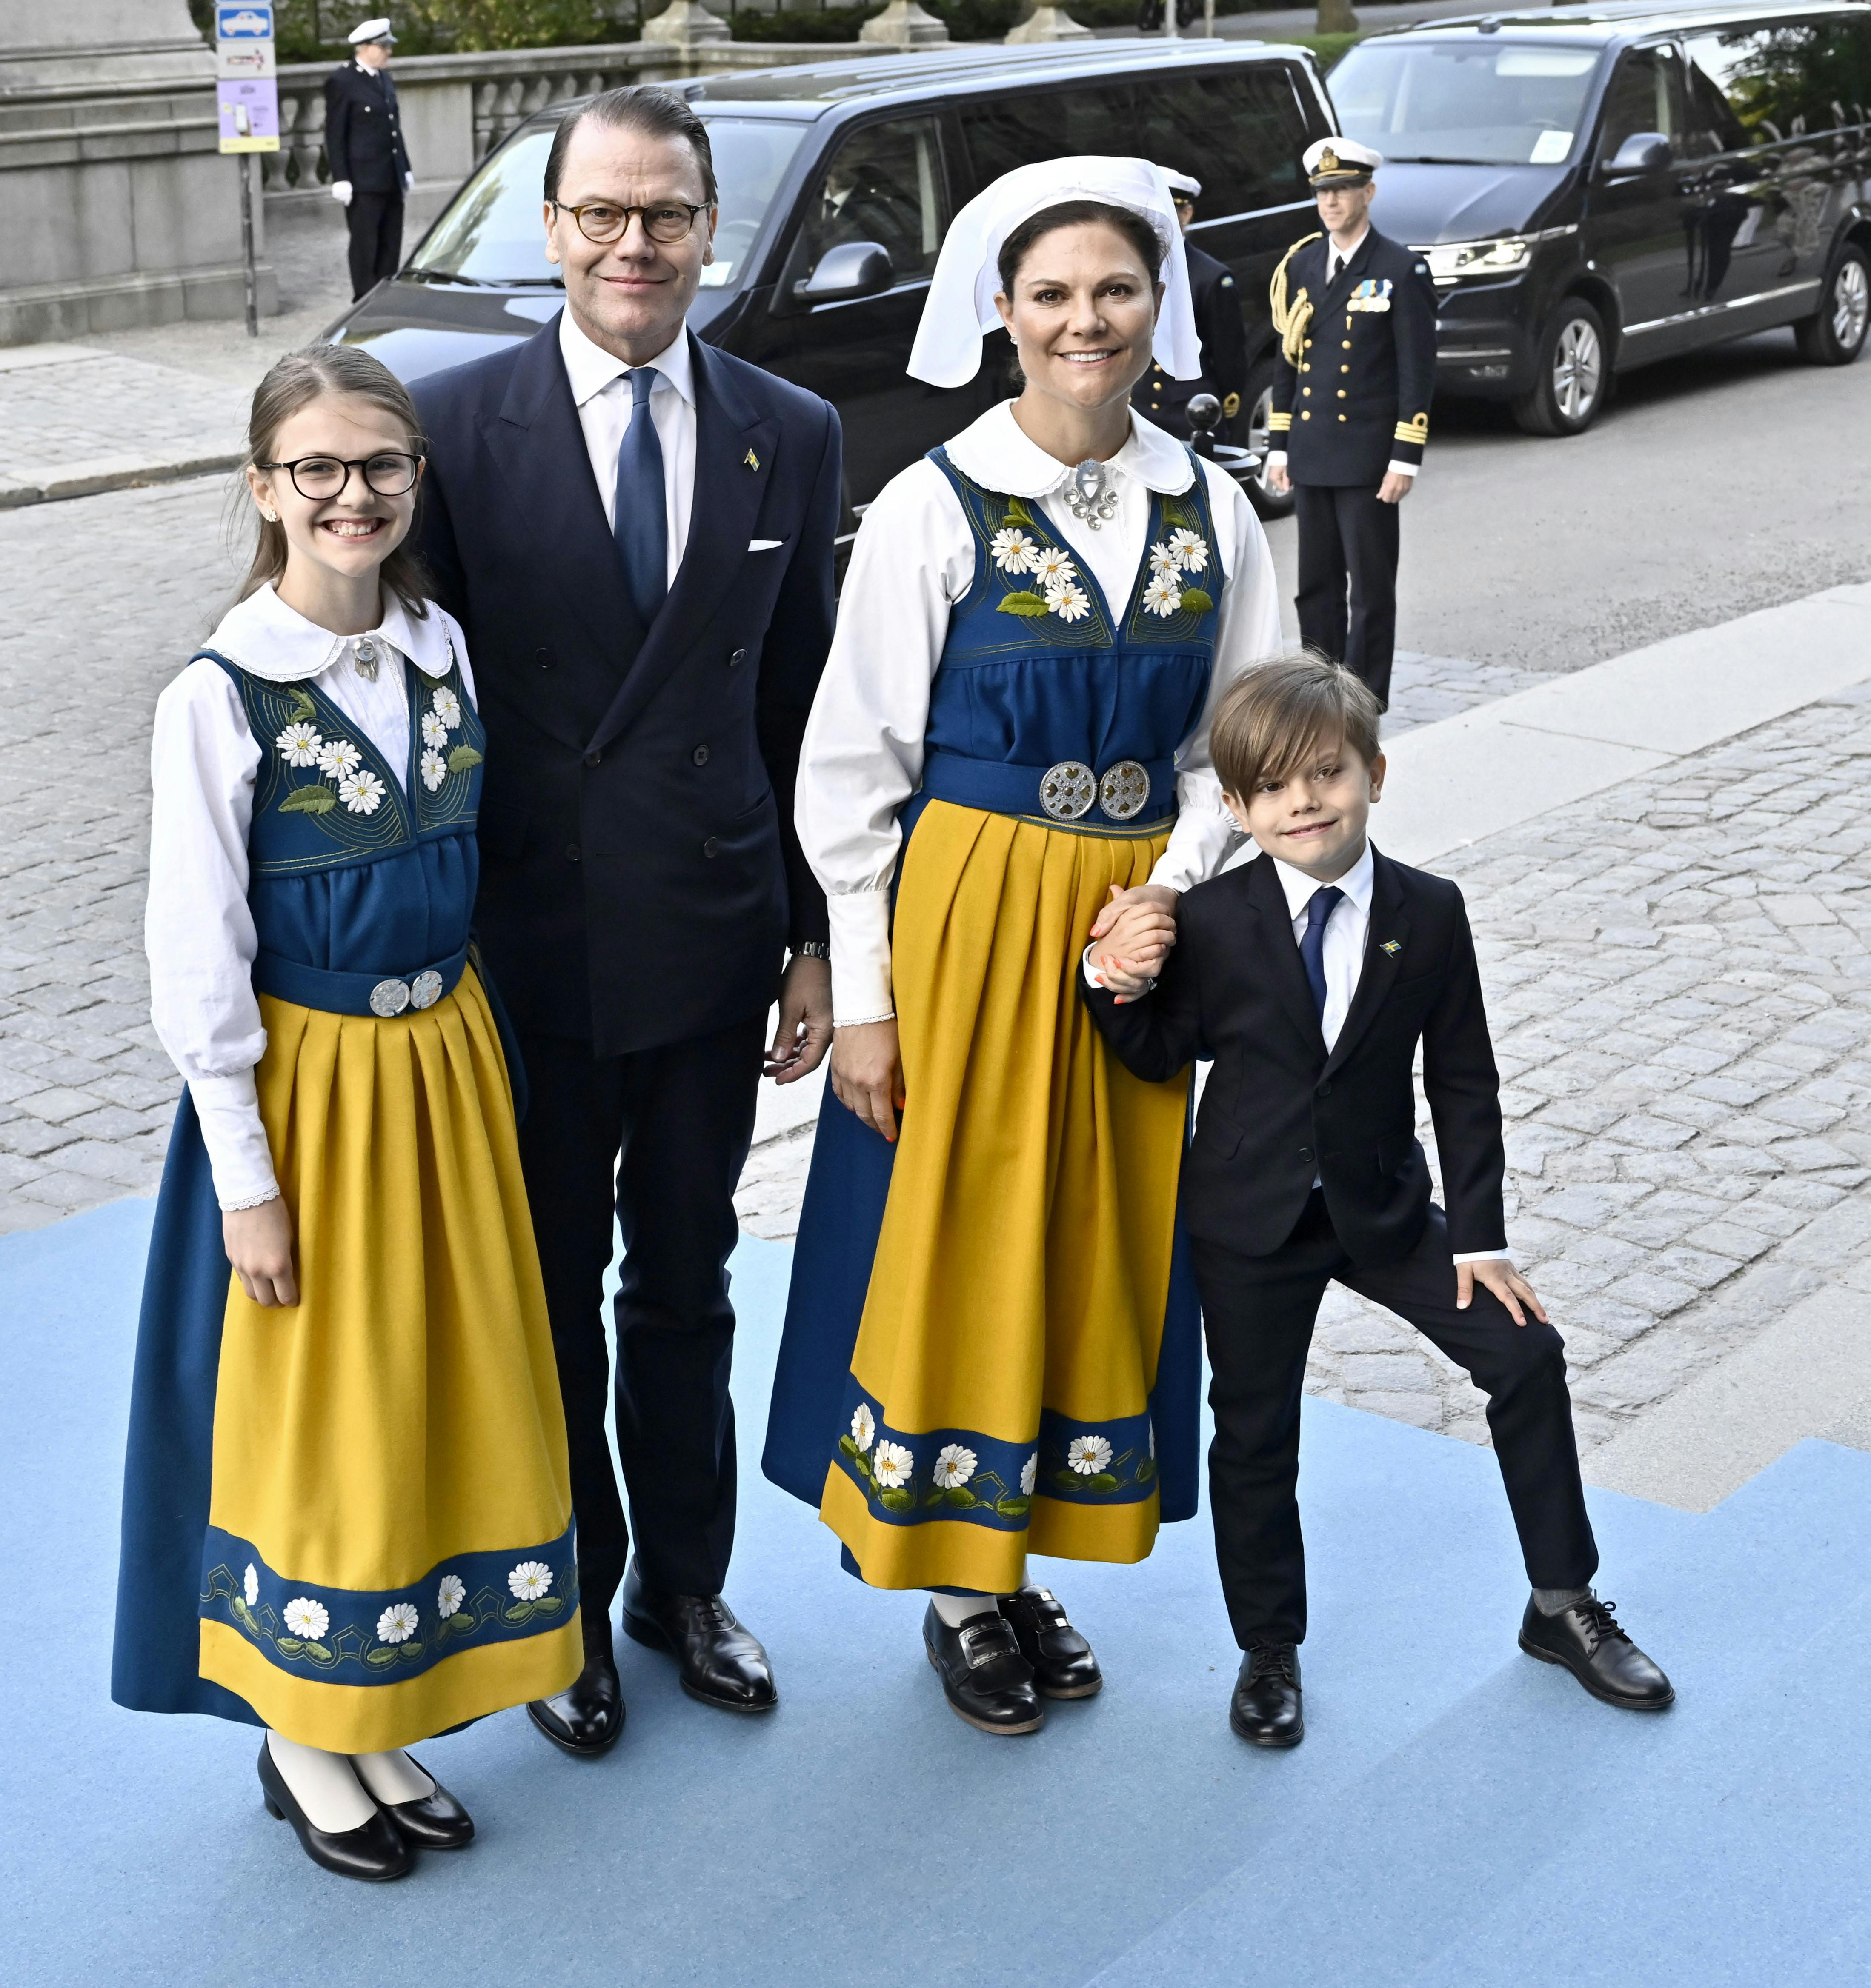 Kronprinsesse Victoria og prins Daniel ankommer til Nordiska Museet med deres to børn, prinsesse Estelle og prins Oscar.
